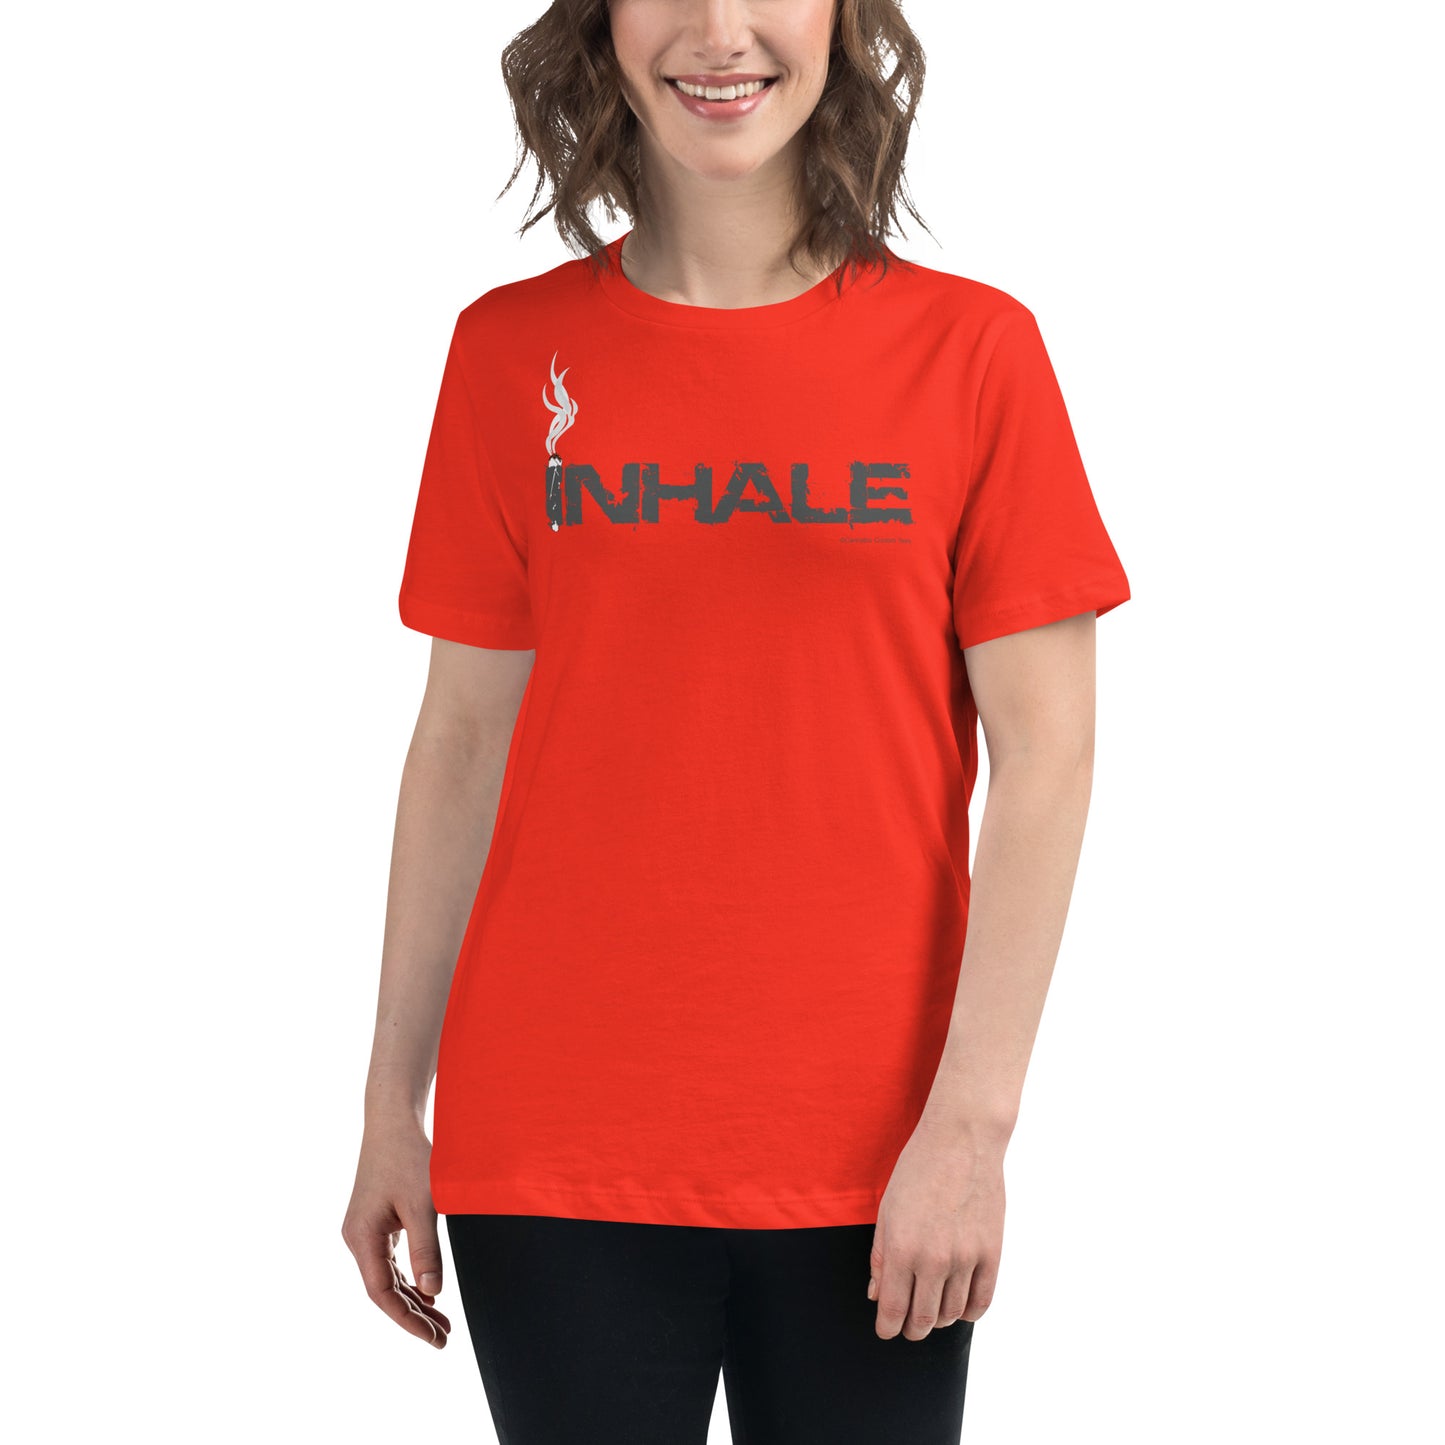 Inhale P413 Women's Relaxed T-Shirt